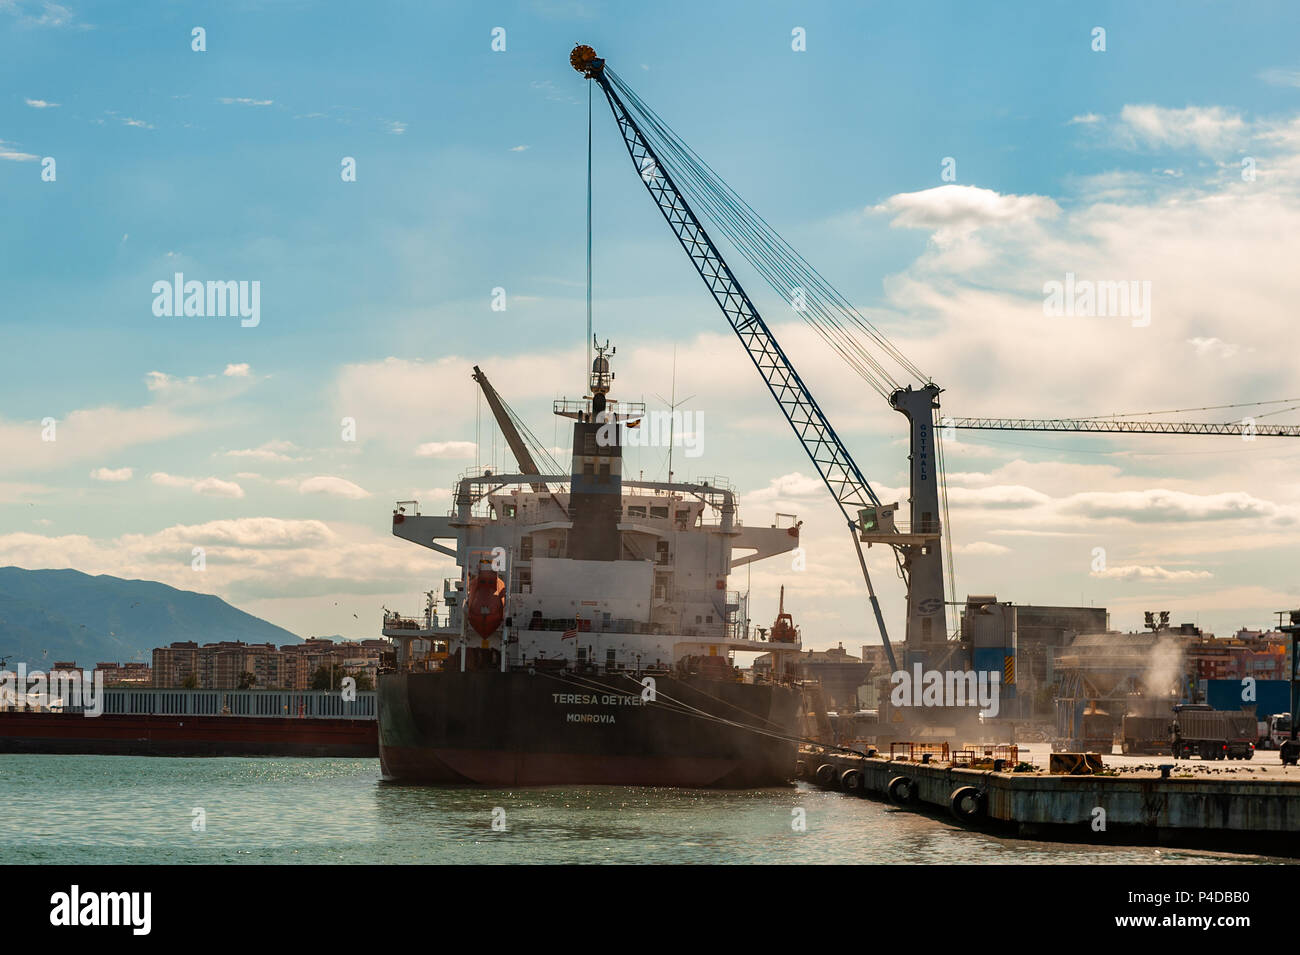 Granelero Teresa Oetker está cargado en el puerto de Málaga, Málaga, España. Foto de stock